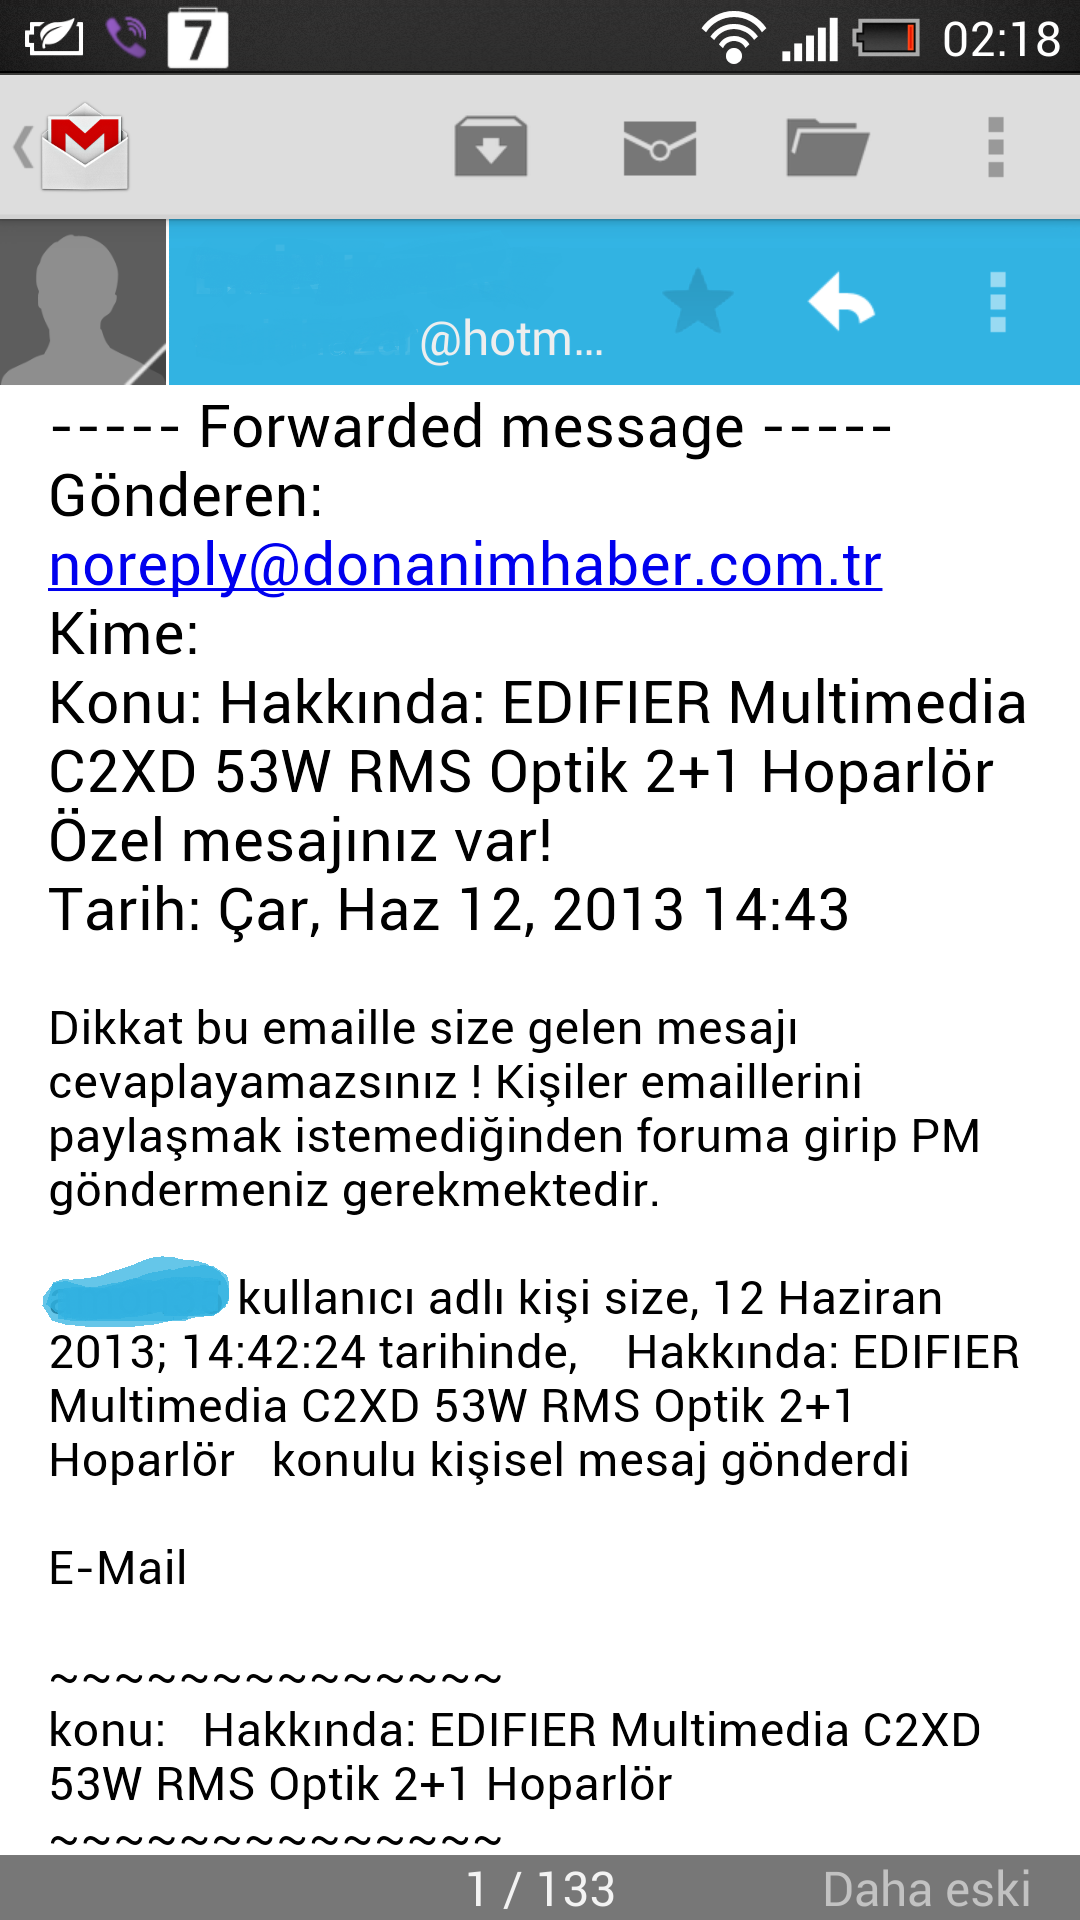  hTC mail uygulaması Türkçe karakter sorunu ve duyarsız hTC Türkiye yönetimi